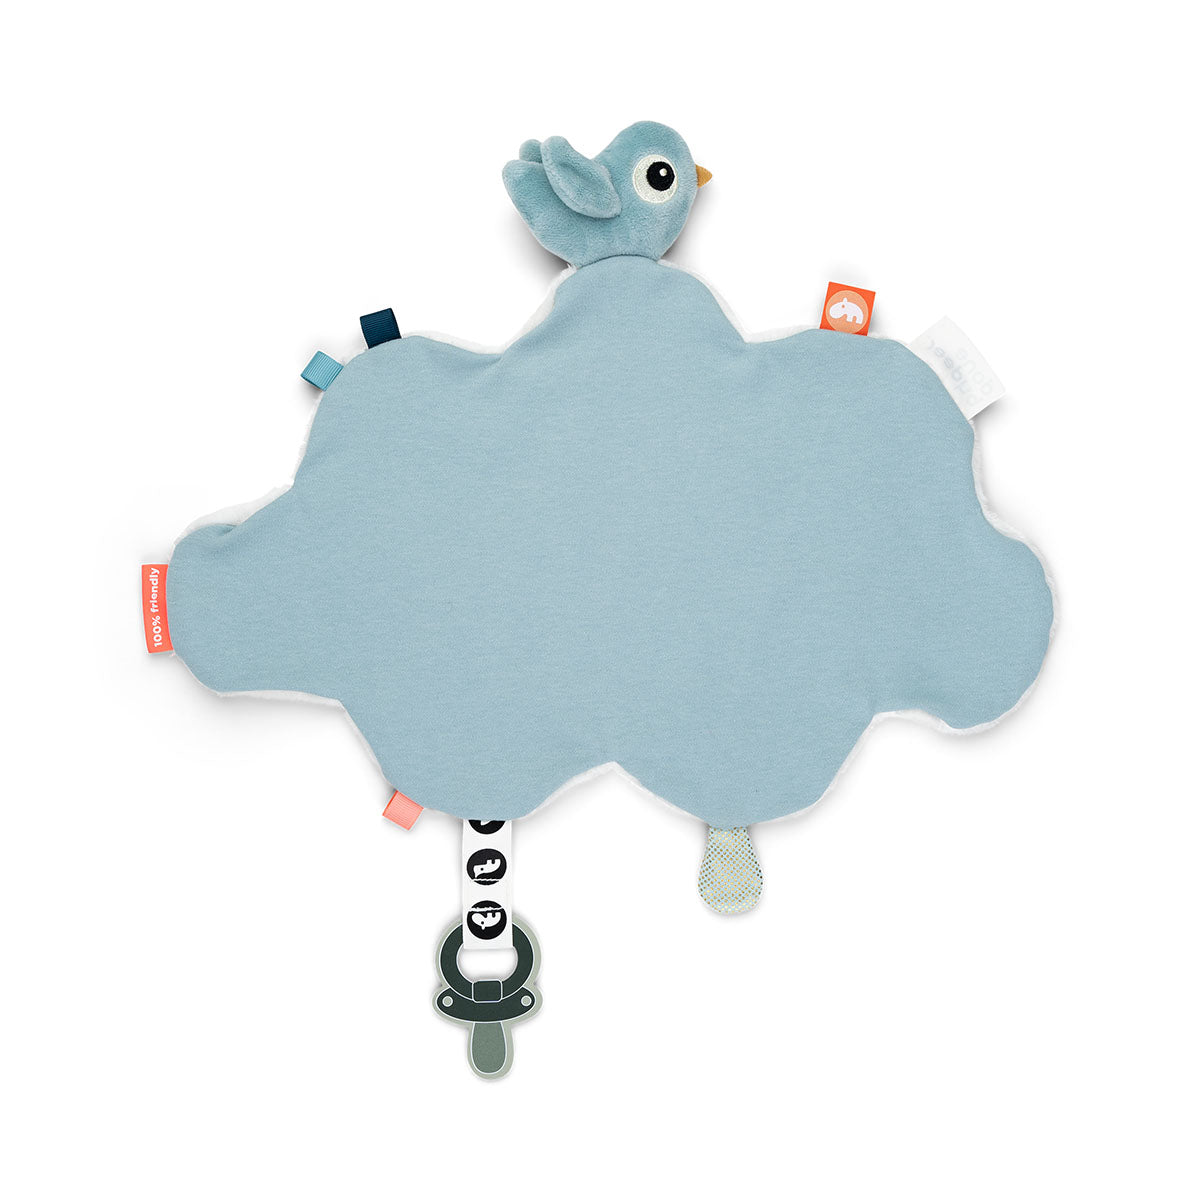 Comfort blanket - Happy clouds - Blue